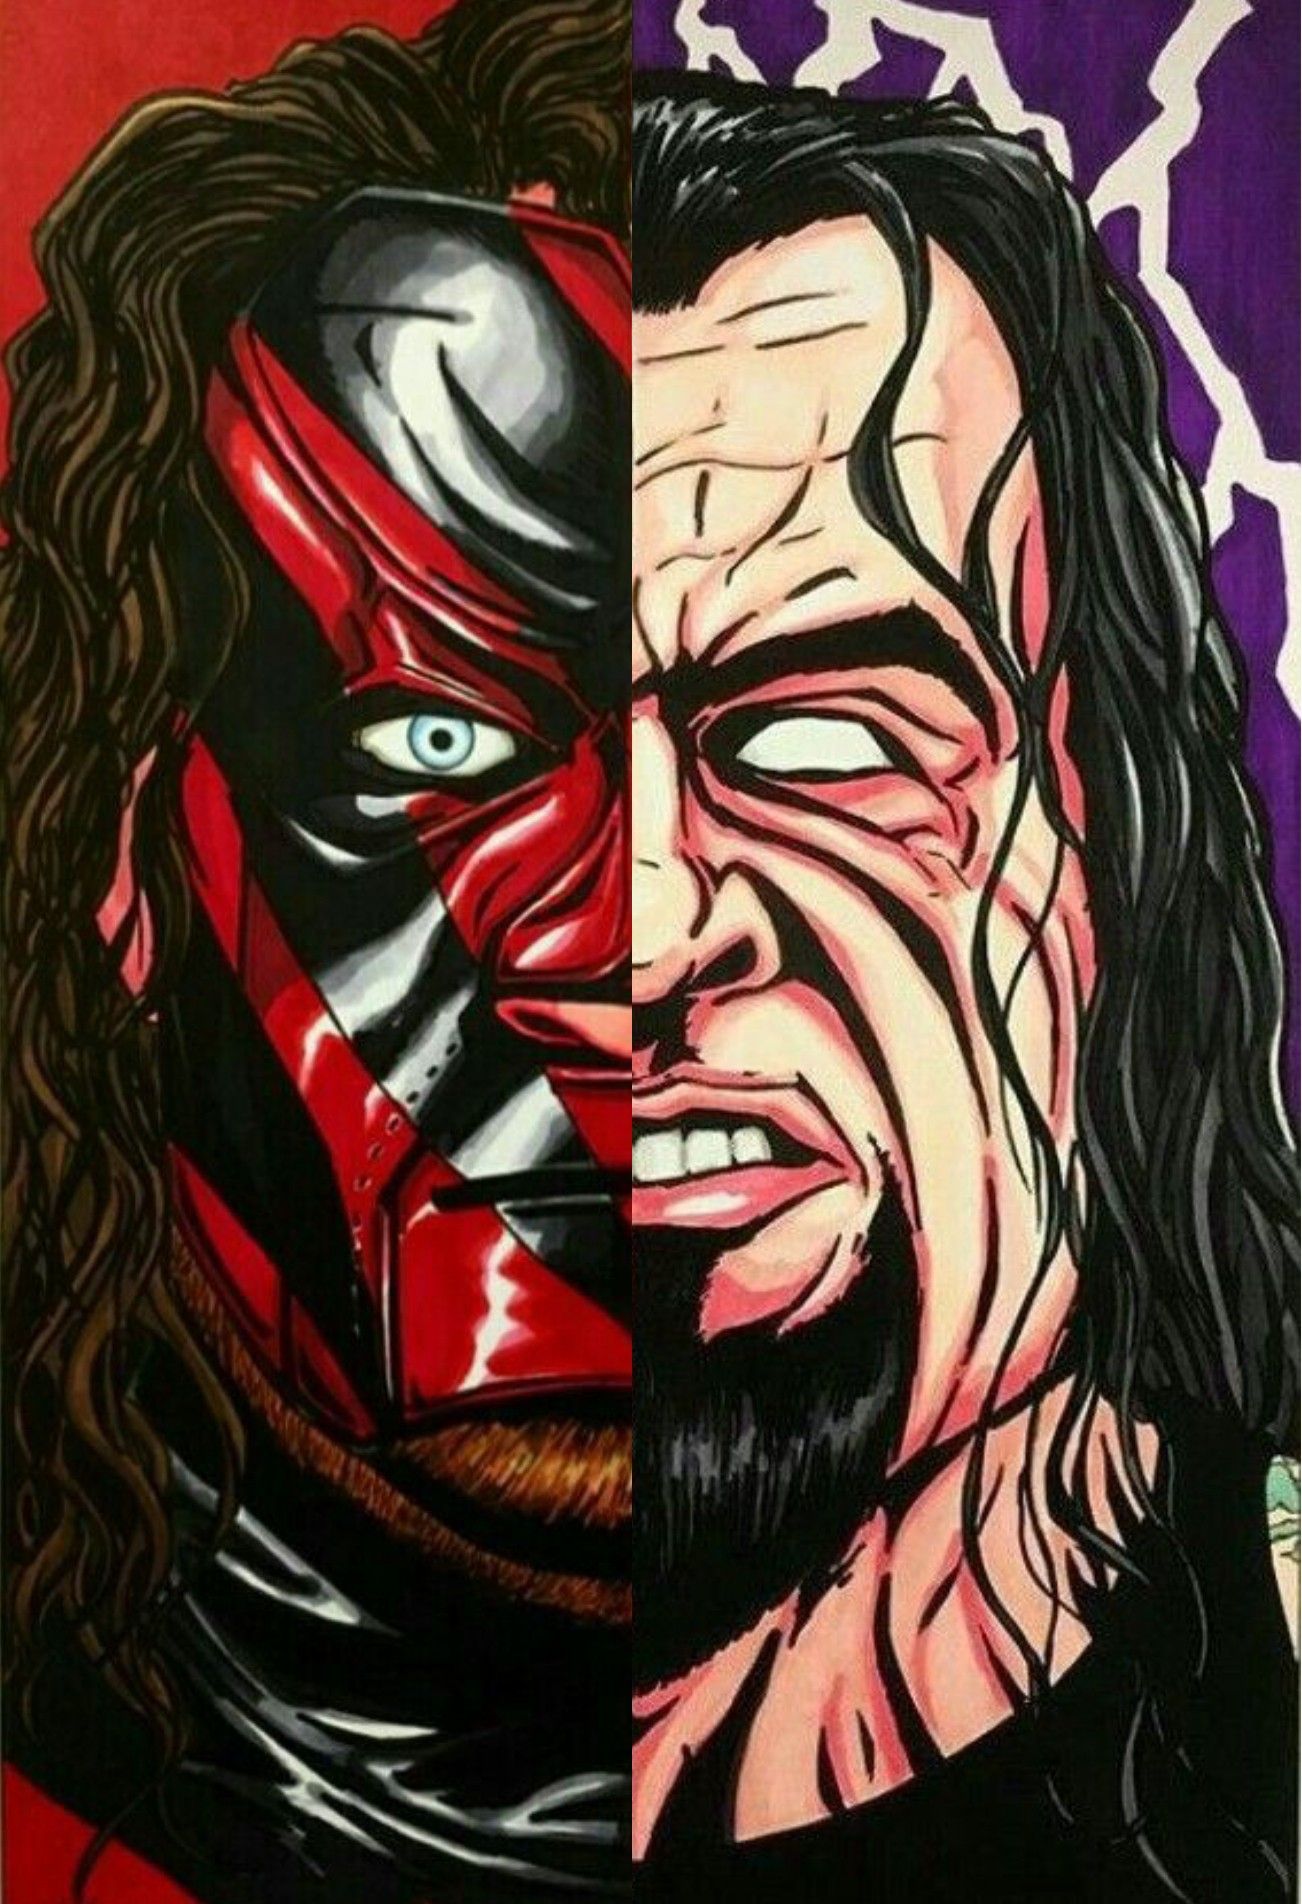 Undertaker & Kane: Brothers of Destruction. Undertaker wwe, Kane wwe, Wwe legends